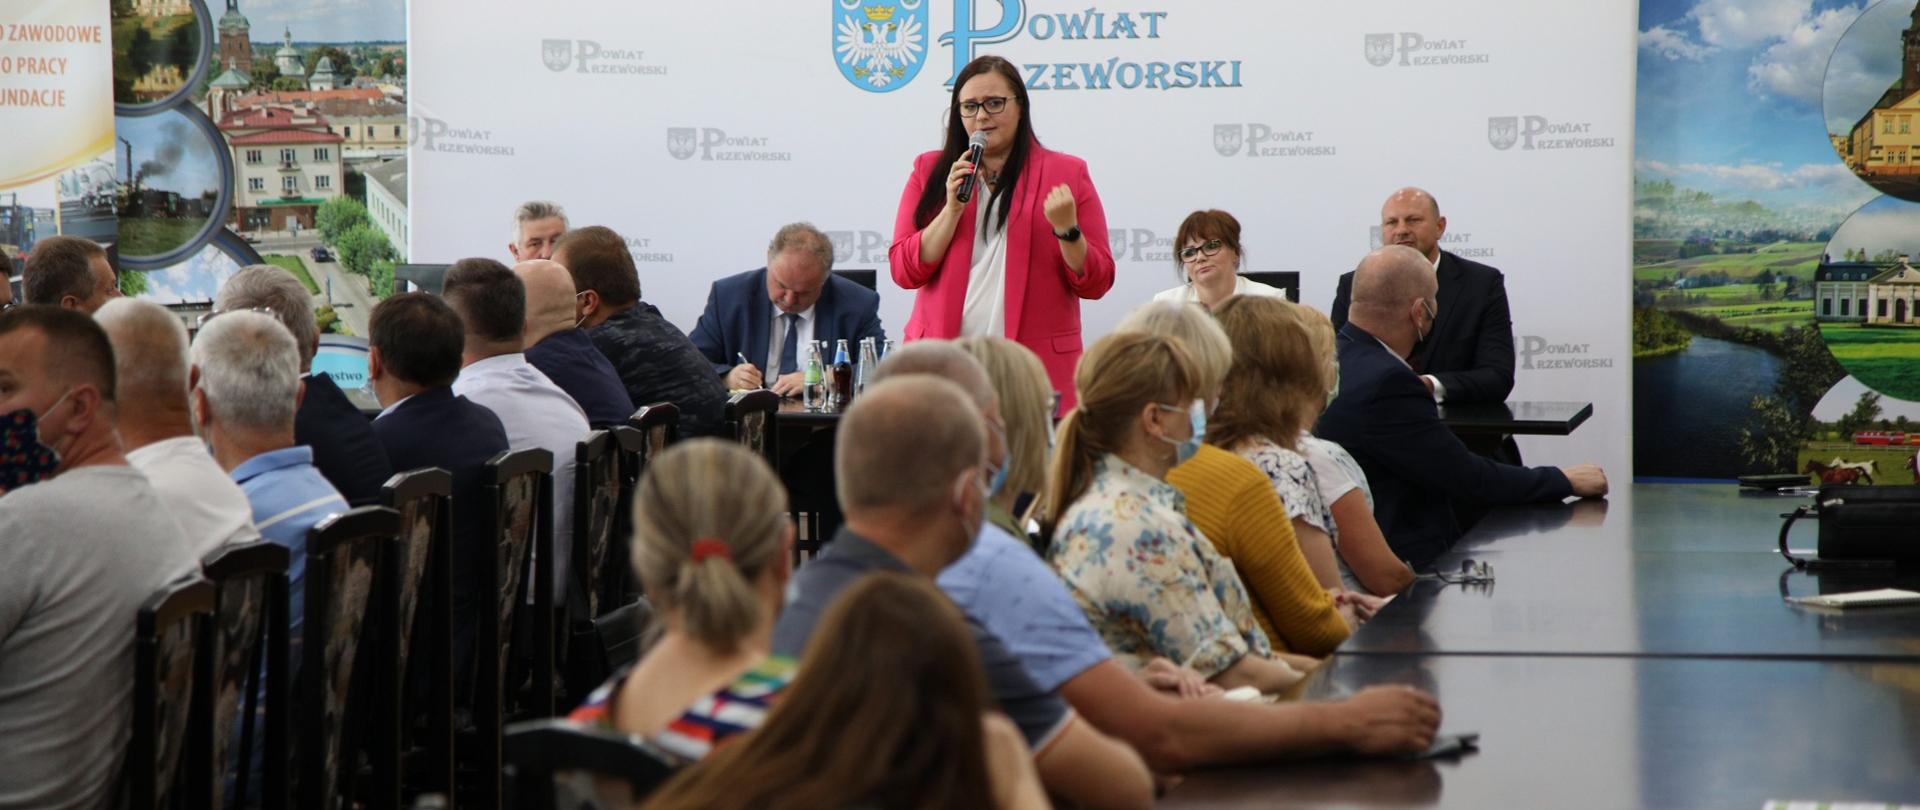 Minister Małgorzata Jarosinska-Jedynak stoi przodem i mówi do osób siedzących przy stołach